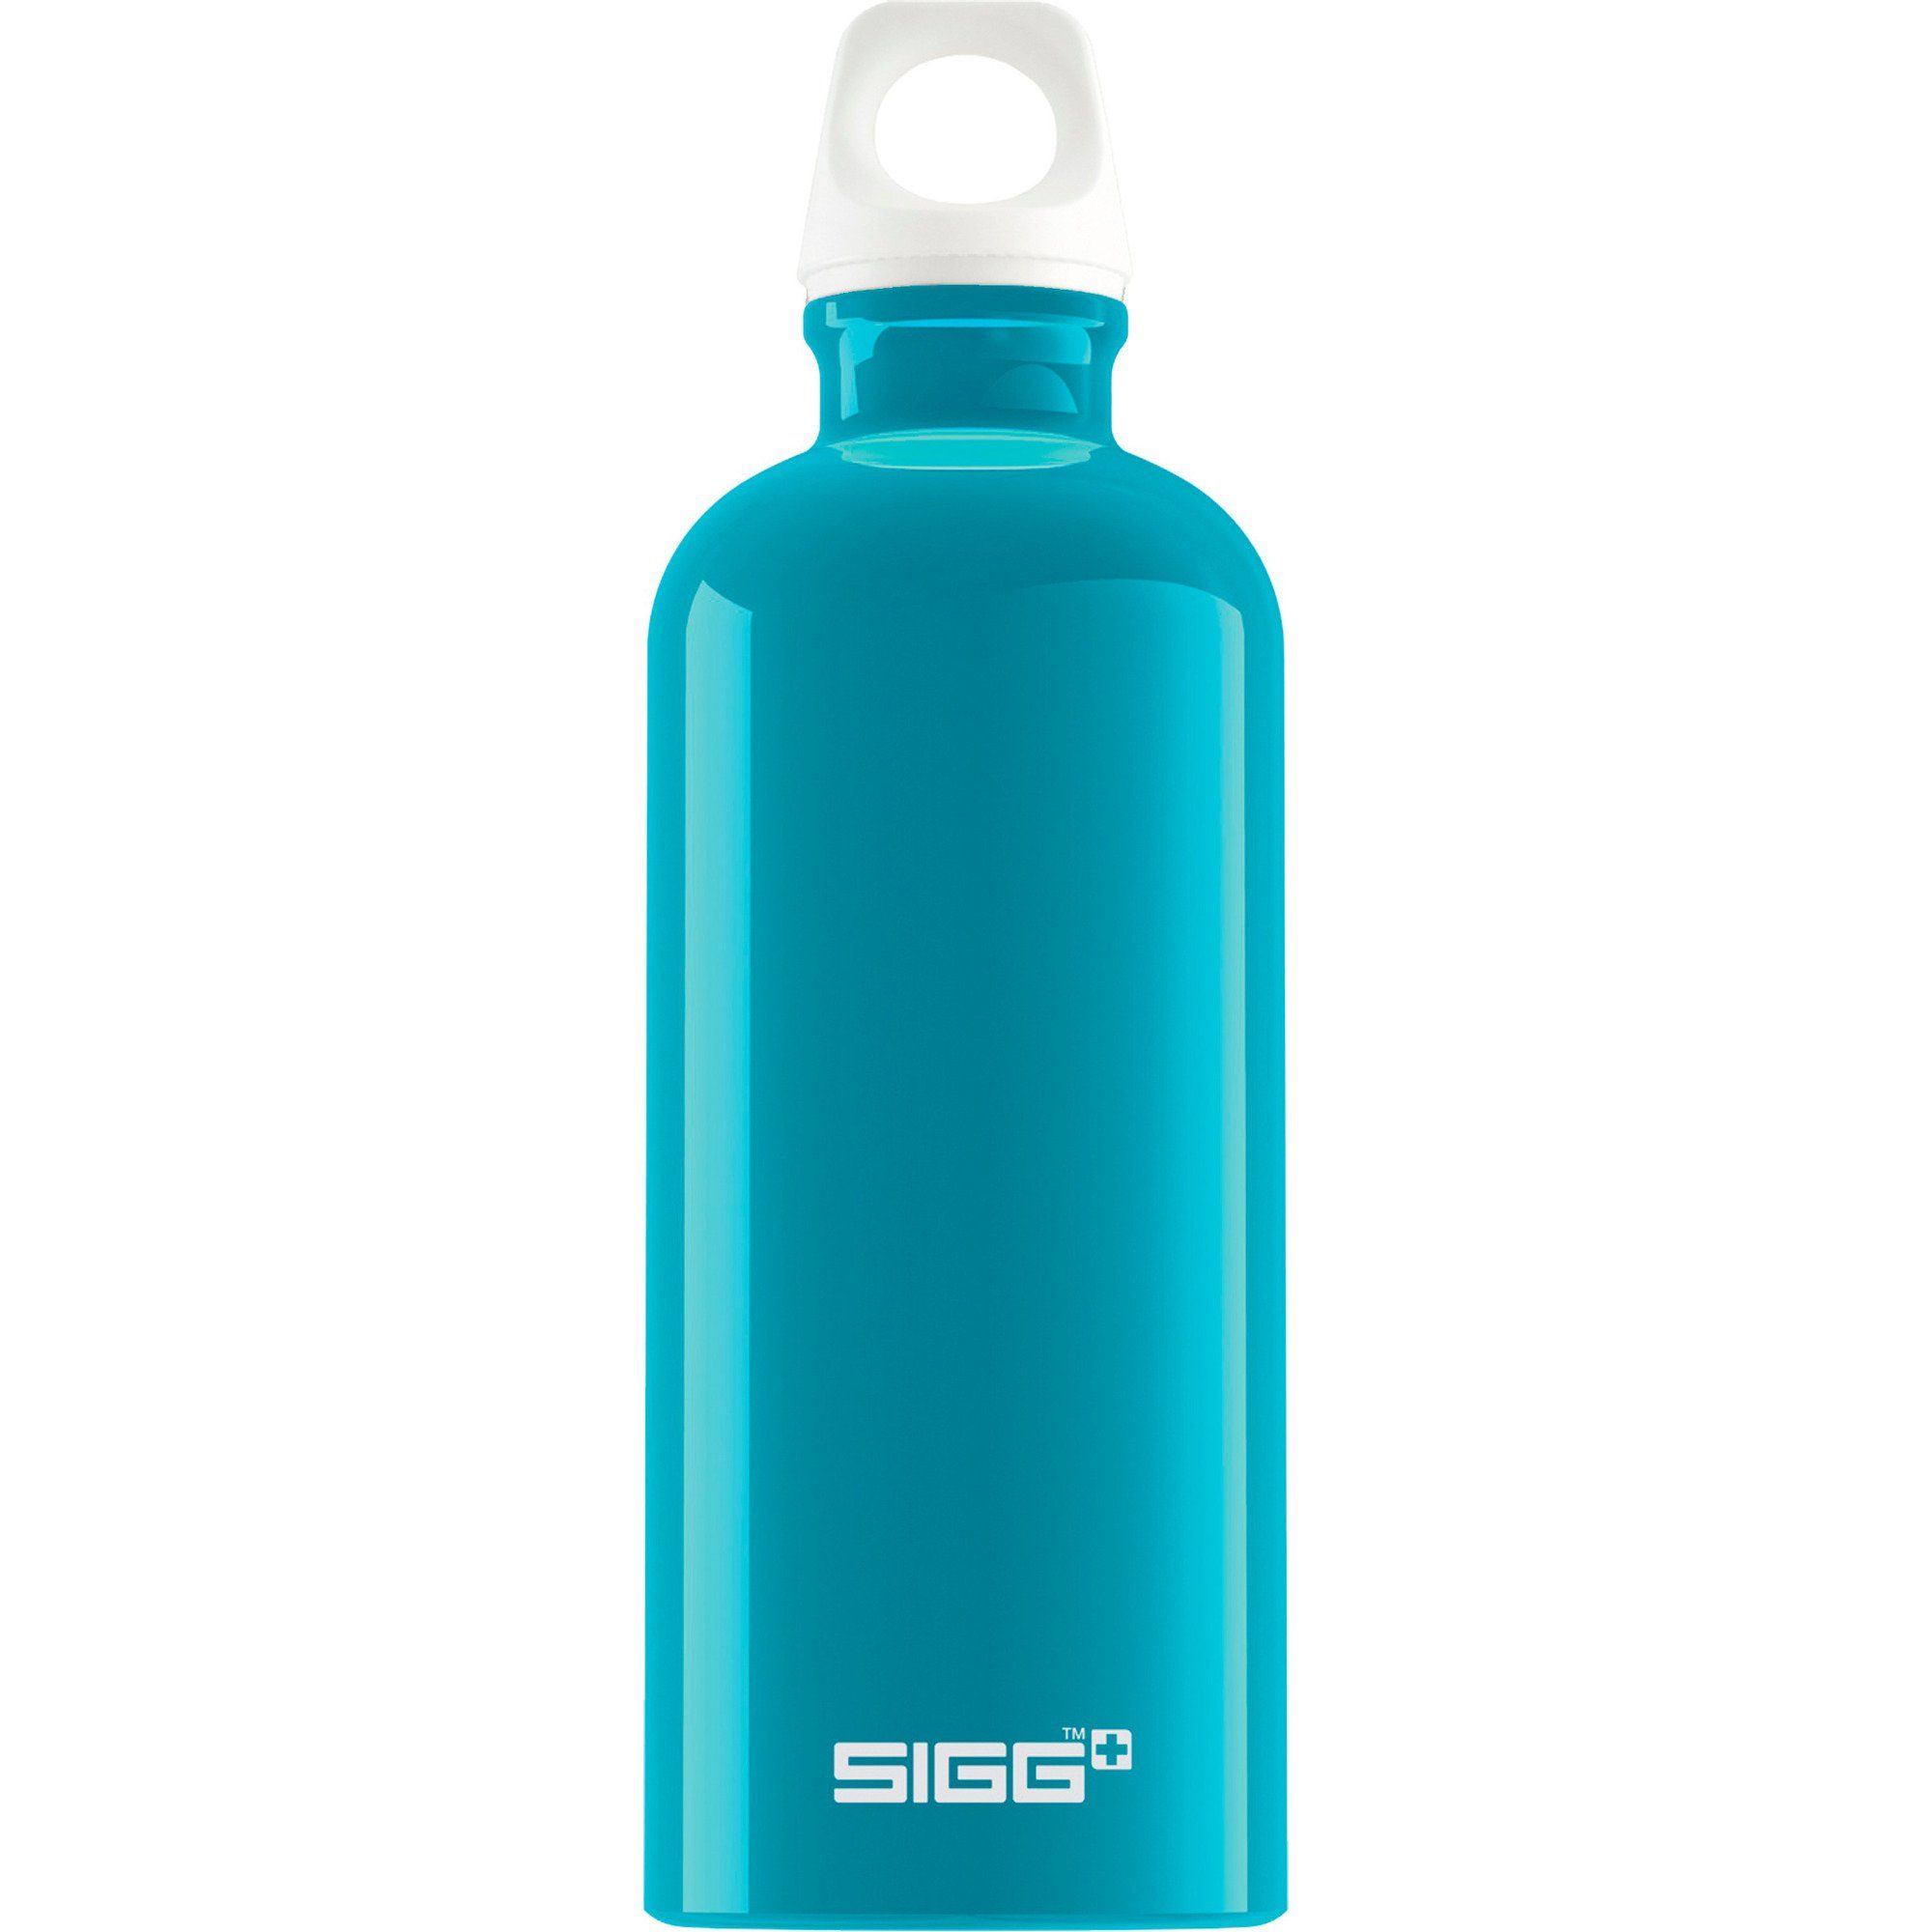 SIGG Sigg Fabulous Geschirr-Set Aqua Liter, 1 Trinkflasche Alu